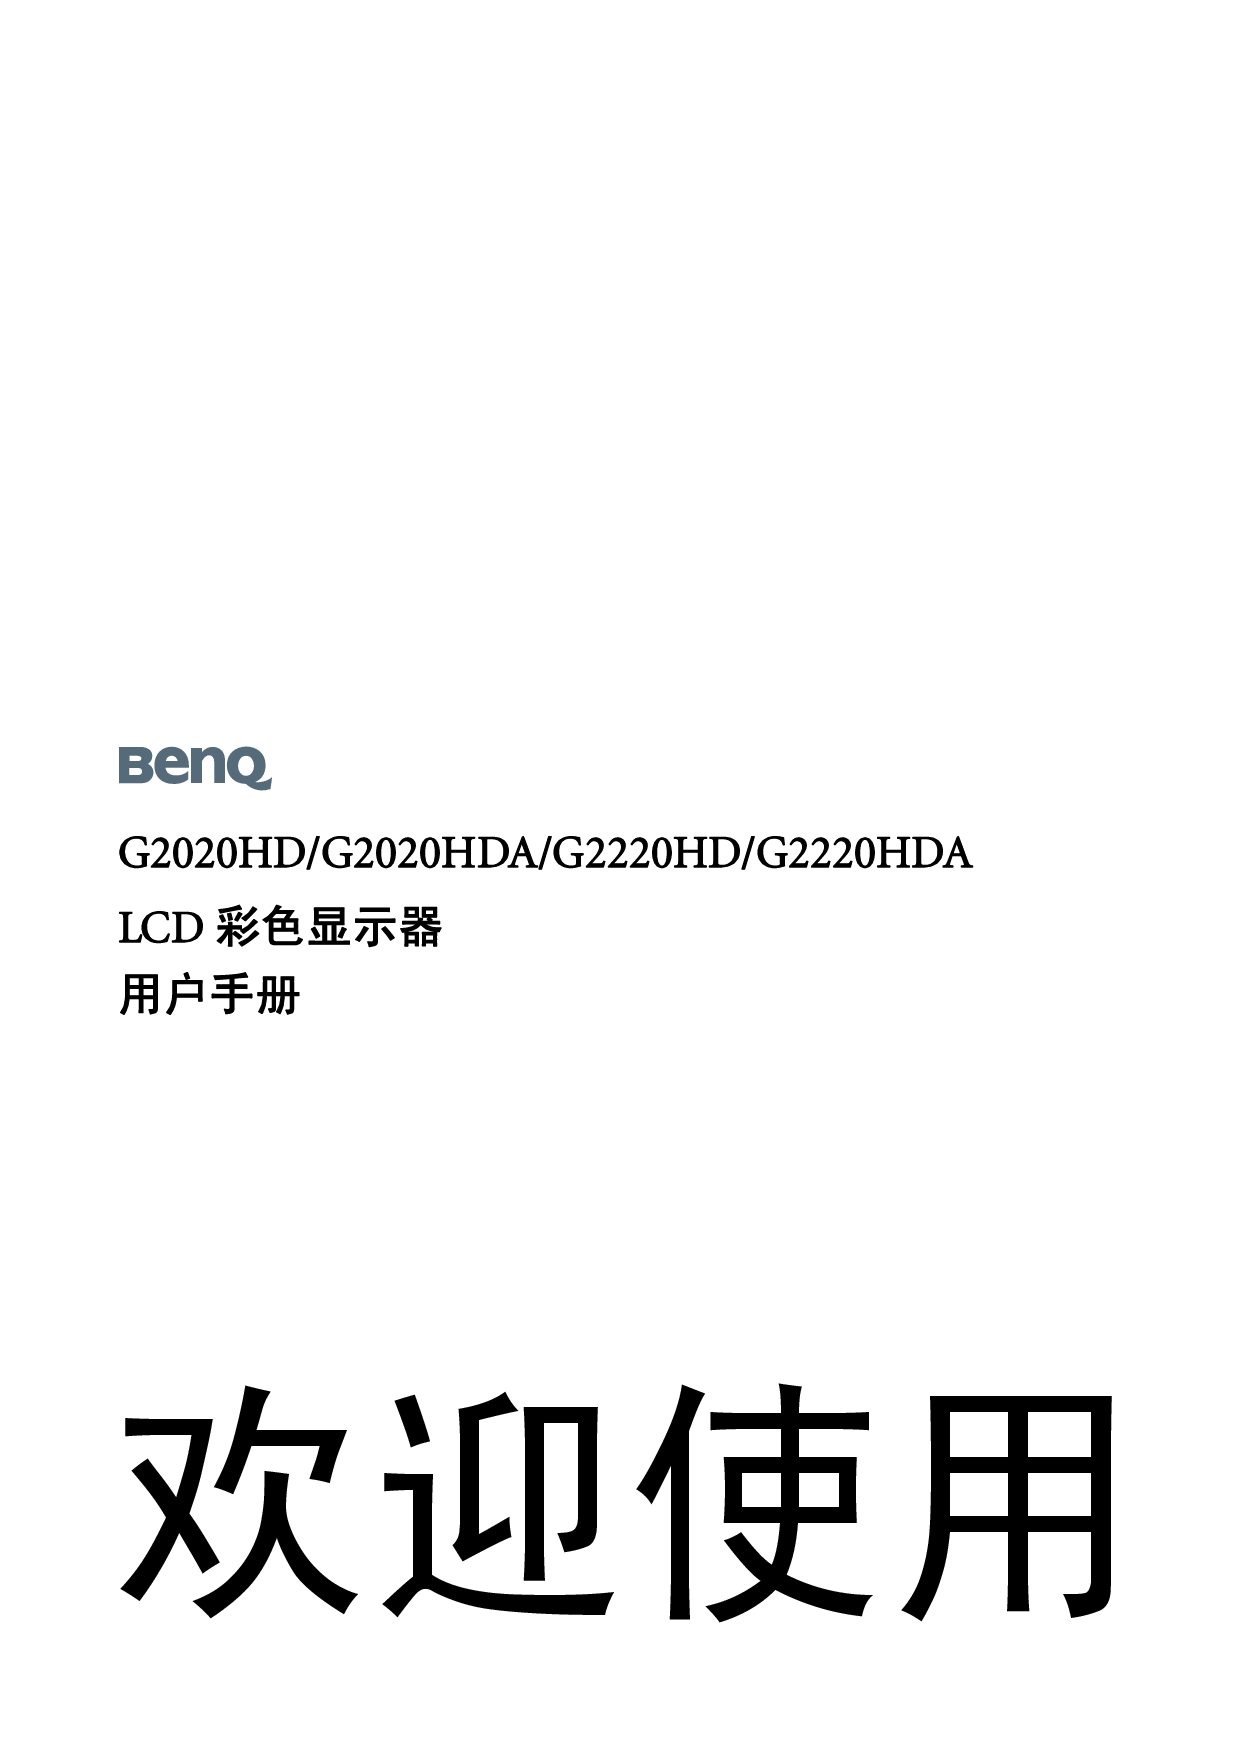 明基 Benq G2020HD 使用手册 封面